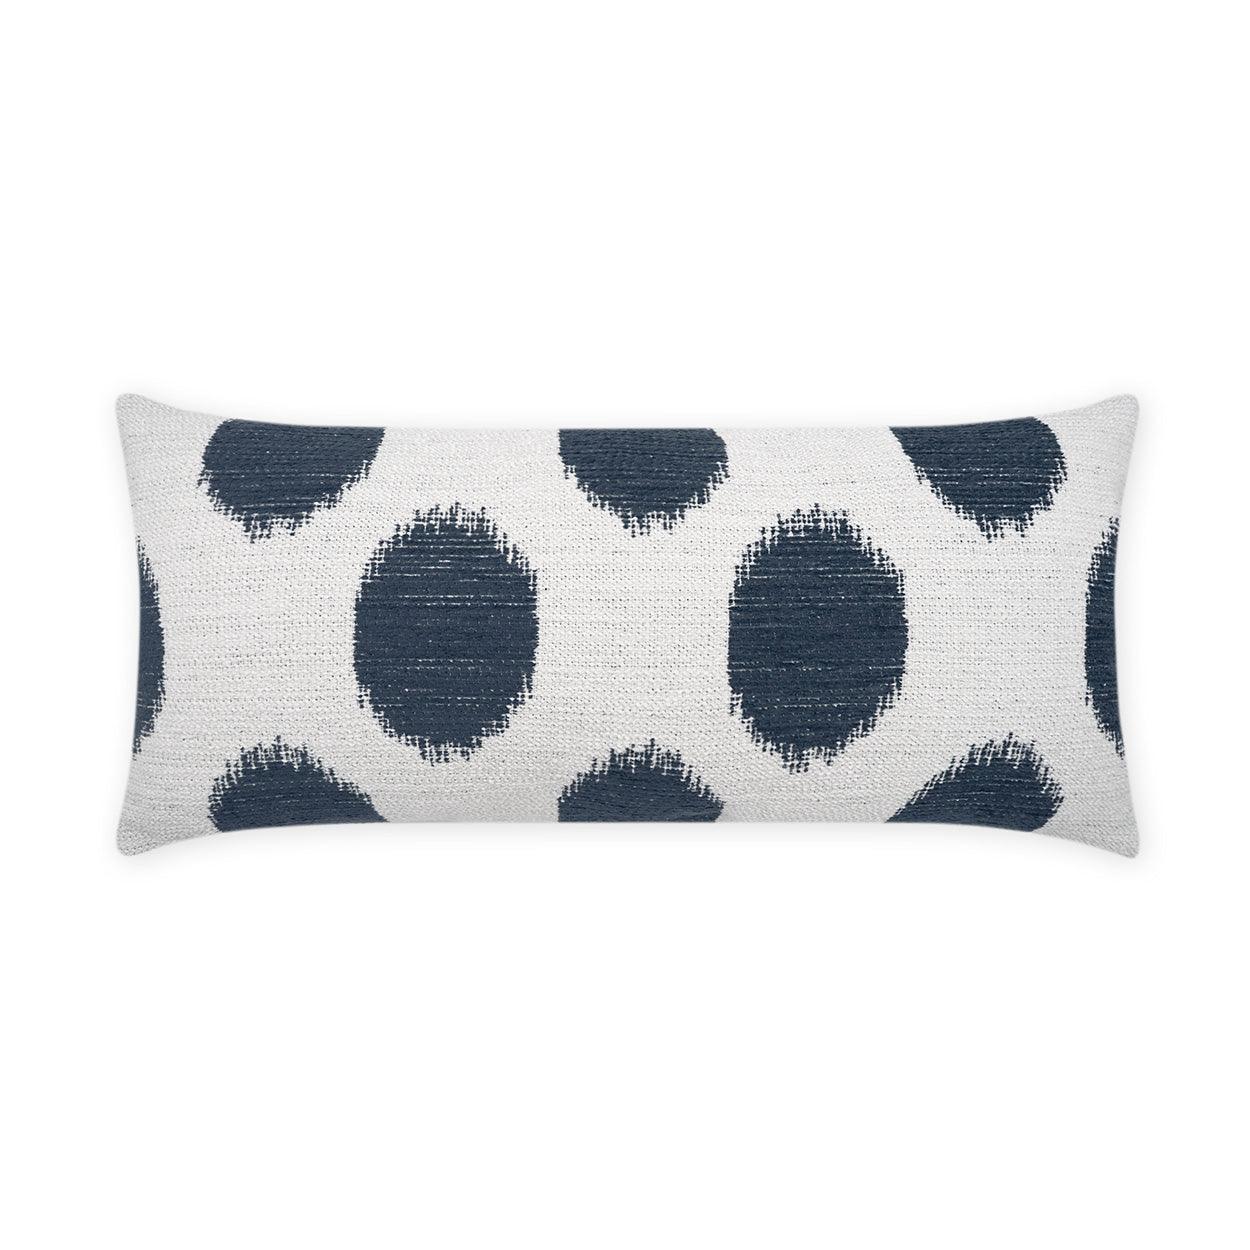 LOOMLAN Outdoor - Outdoor Vianella Lumbar Pillow - Indigo - Outdoor Pillows